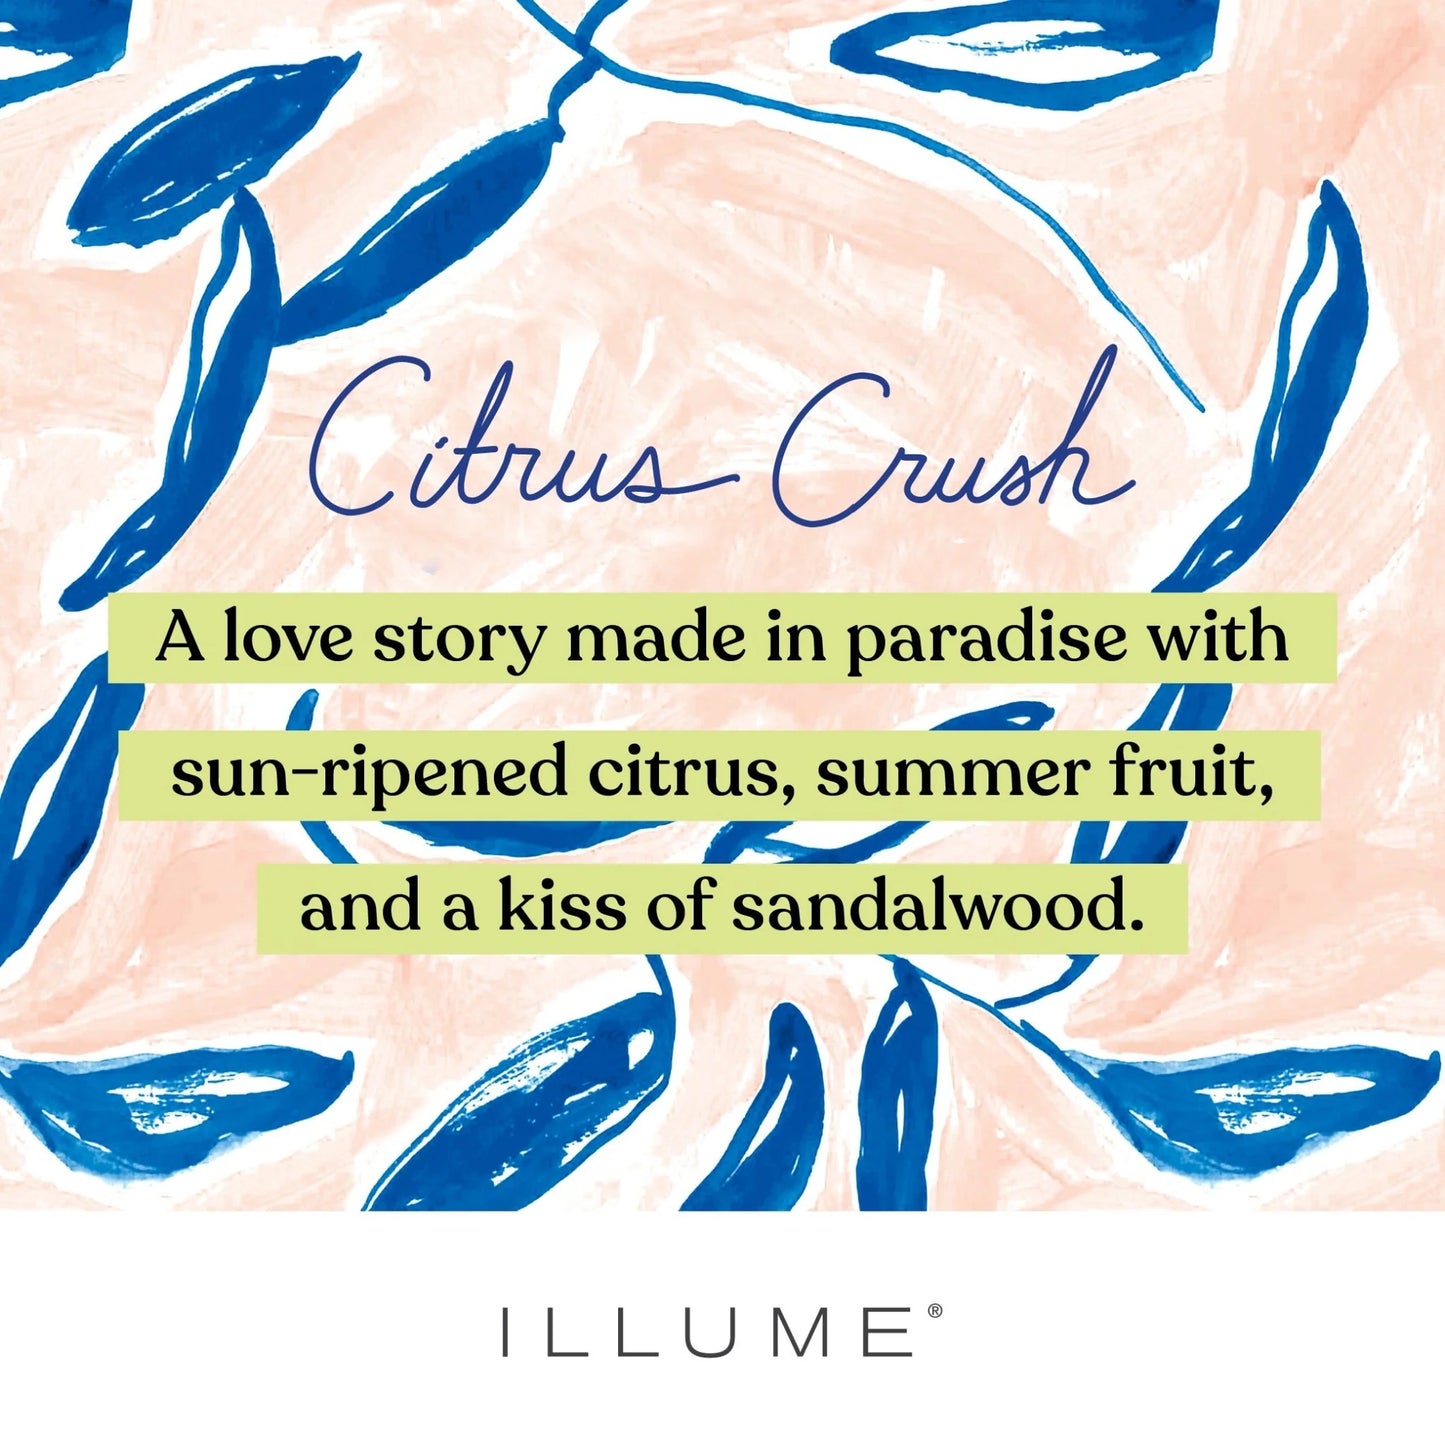 Illume Bath Soak In Citrus Crush